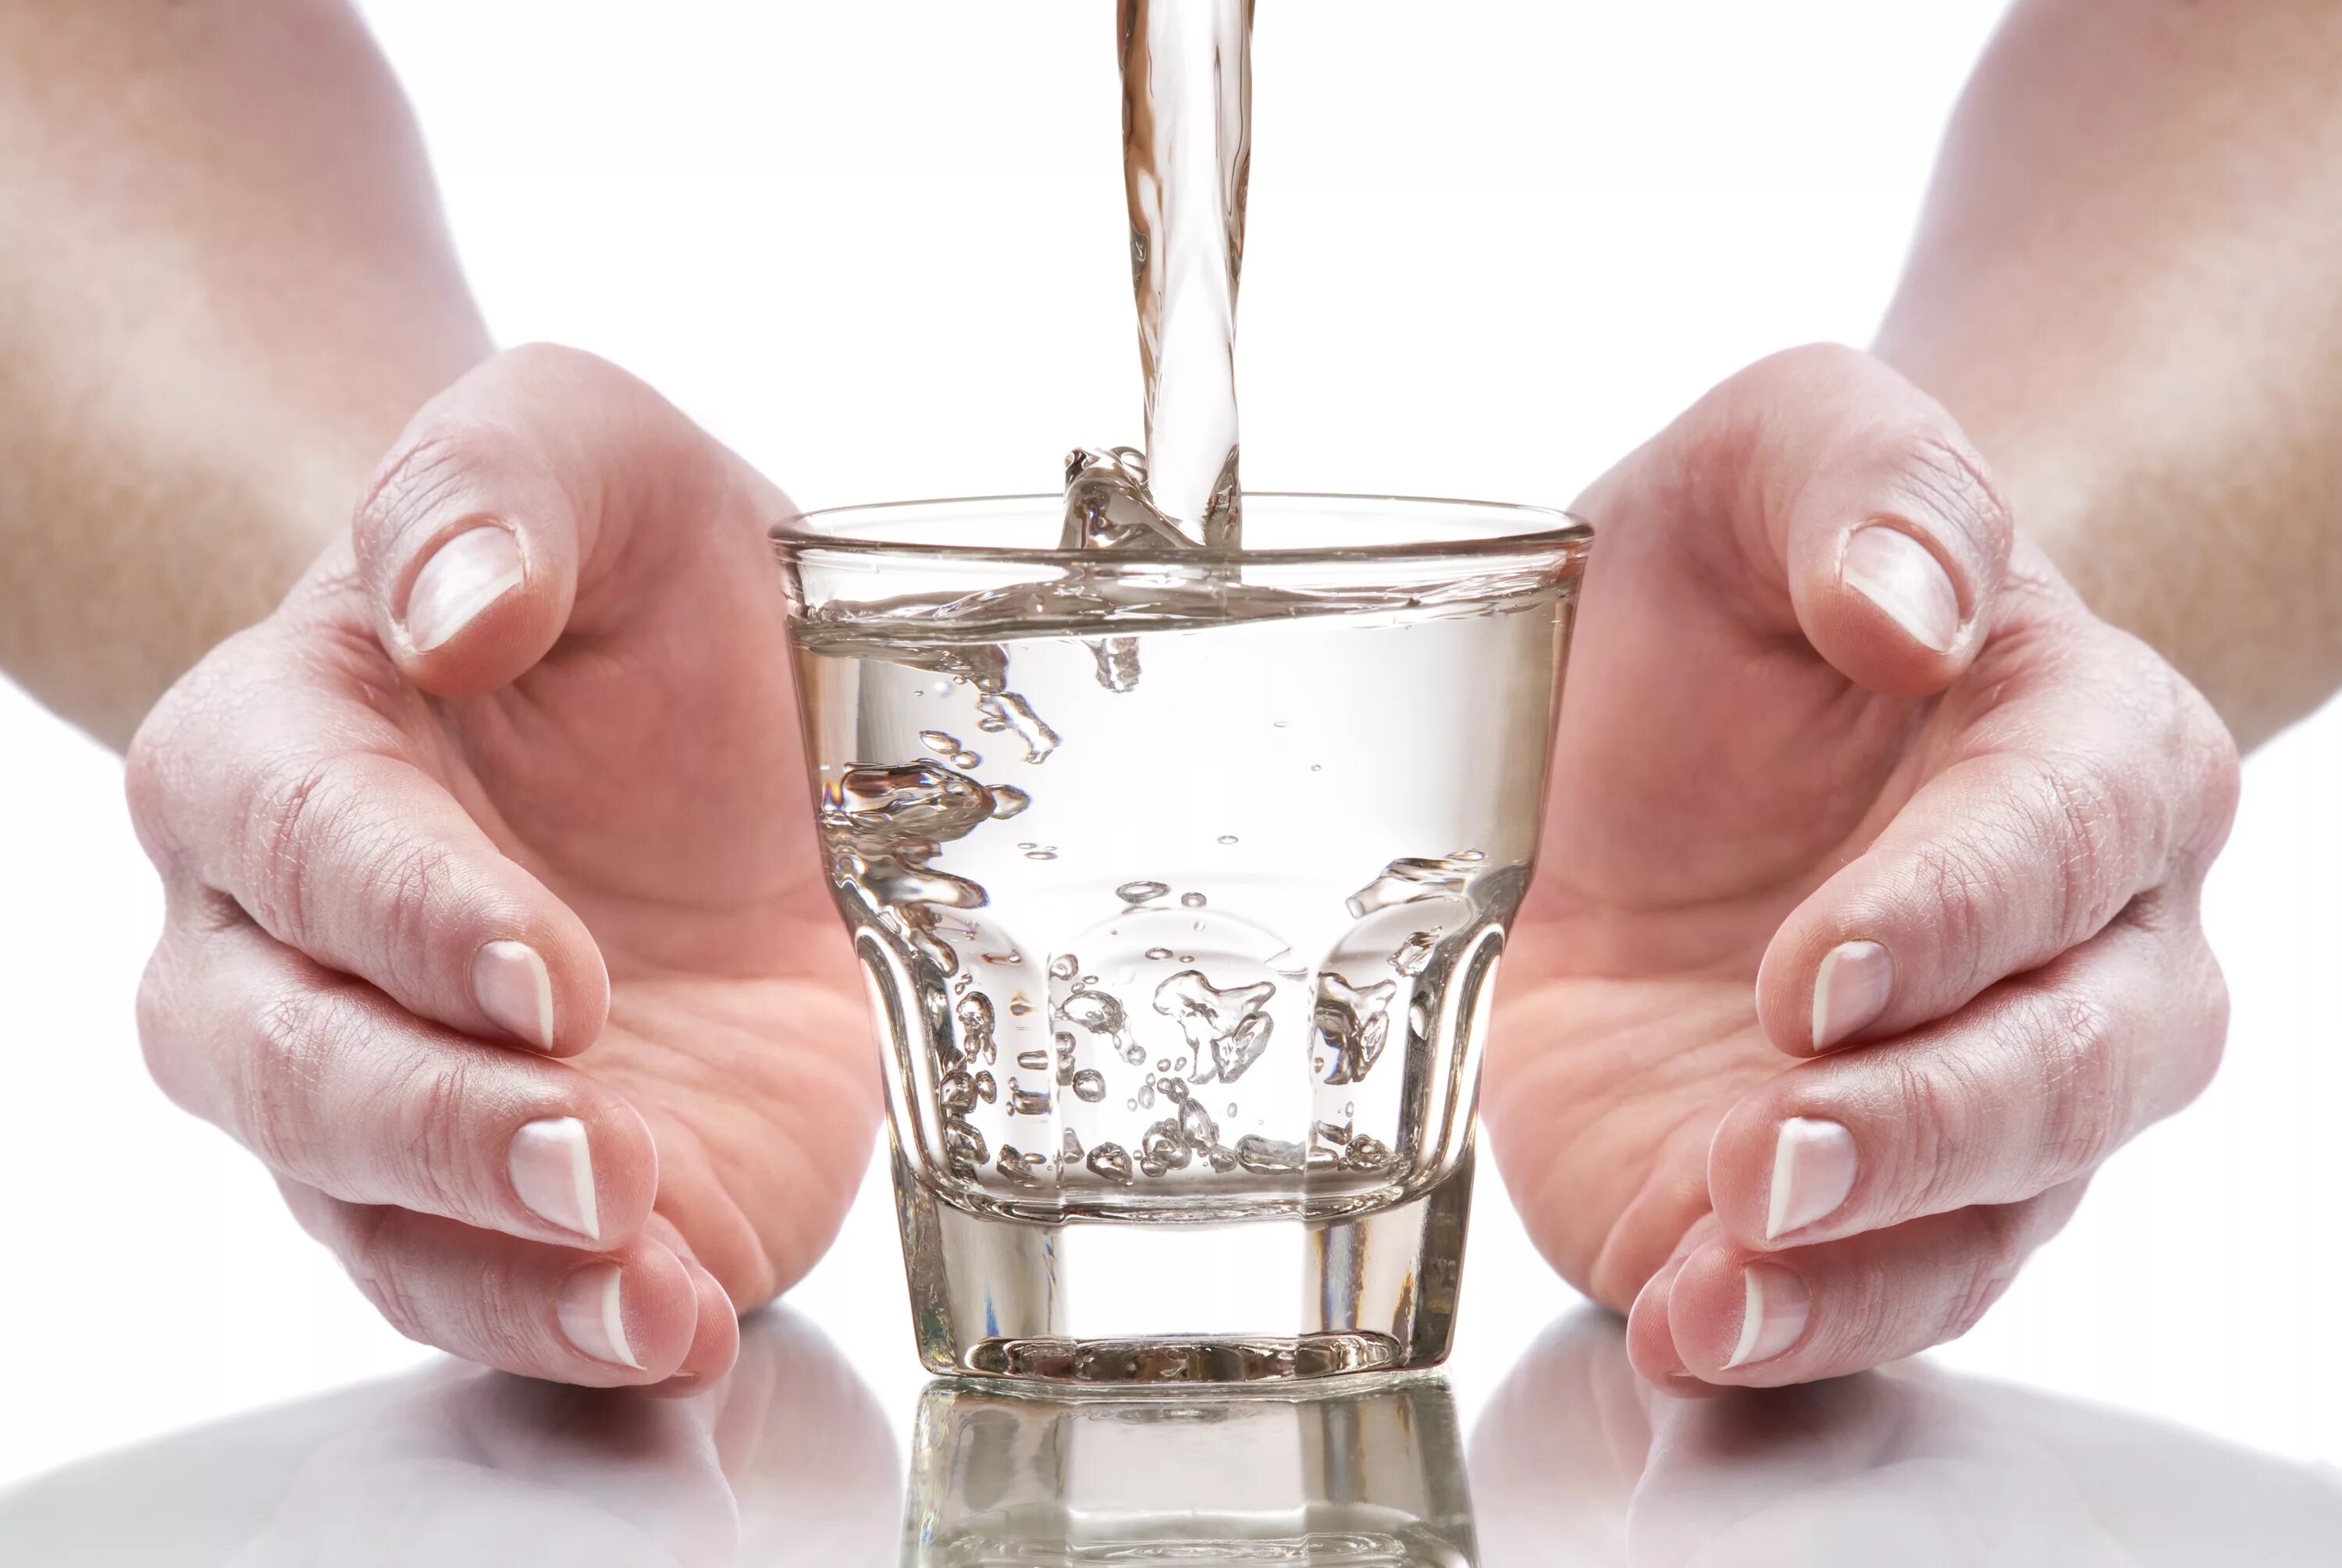 Стакан воды. Техника стакан воды. Стакан воды для исполнения желаний. Стакан воды в руке. Нужно пить чистую воду